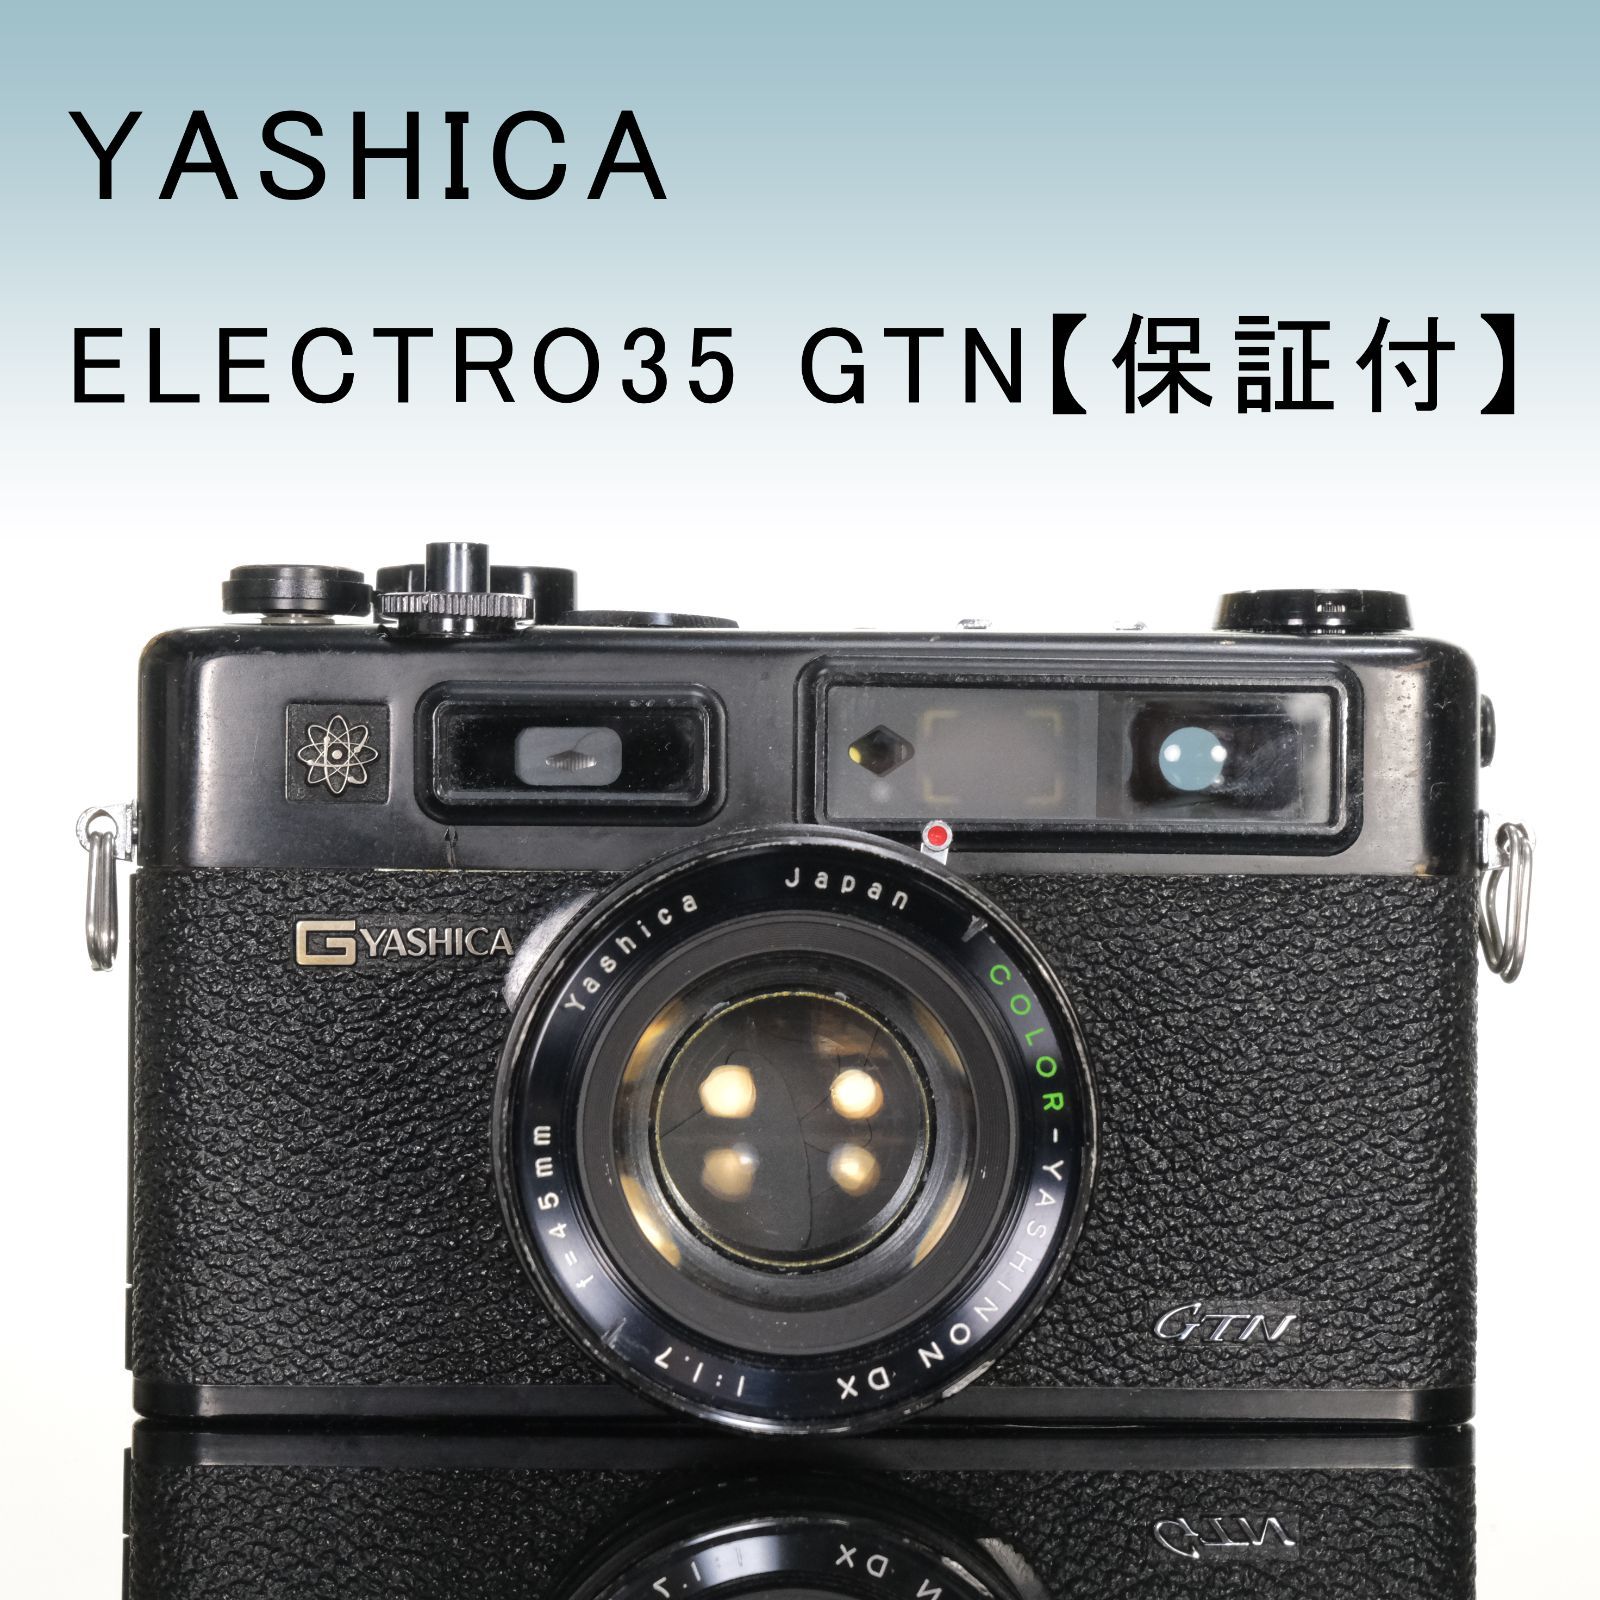 6,750円ヤシカ エレクトロ35 フィルムカメラ ナショナル フラッシュセット